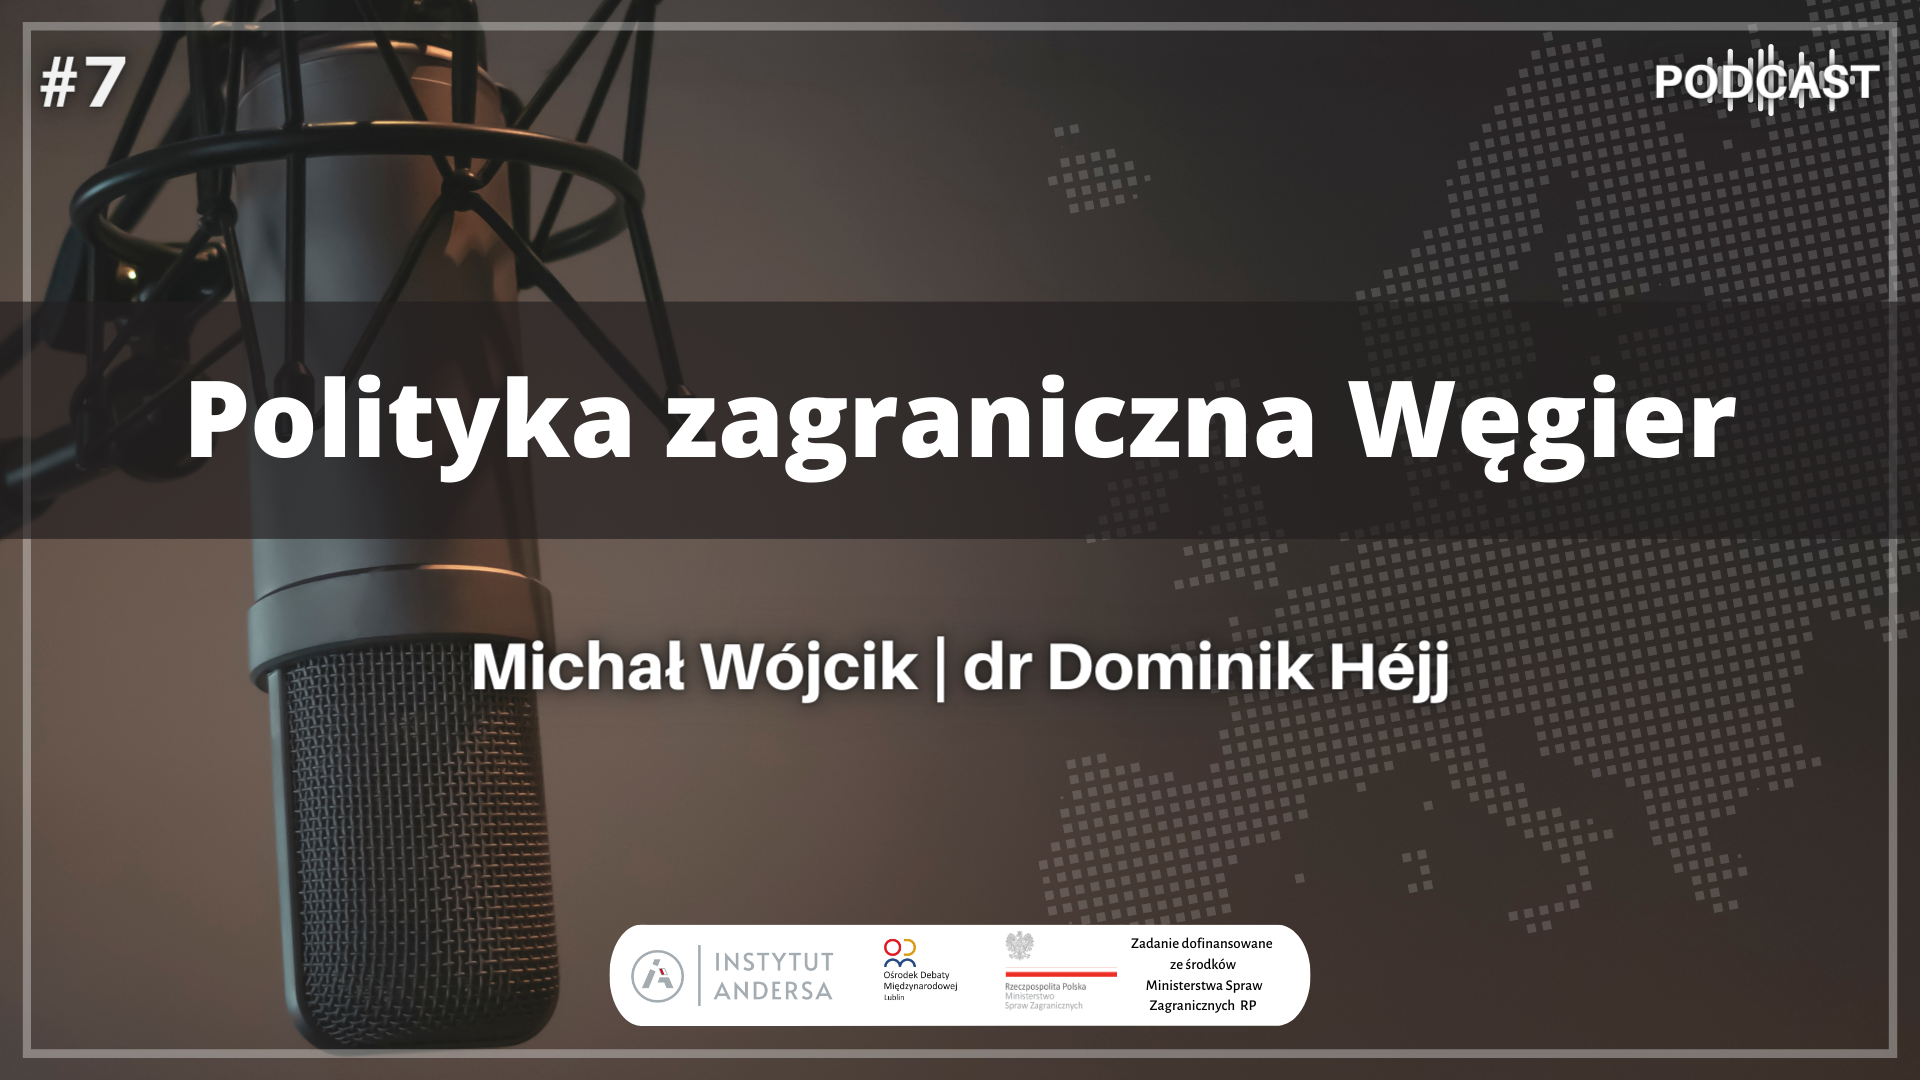 Podcast: Polityka zagraniczna Węgier